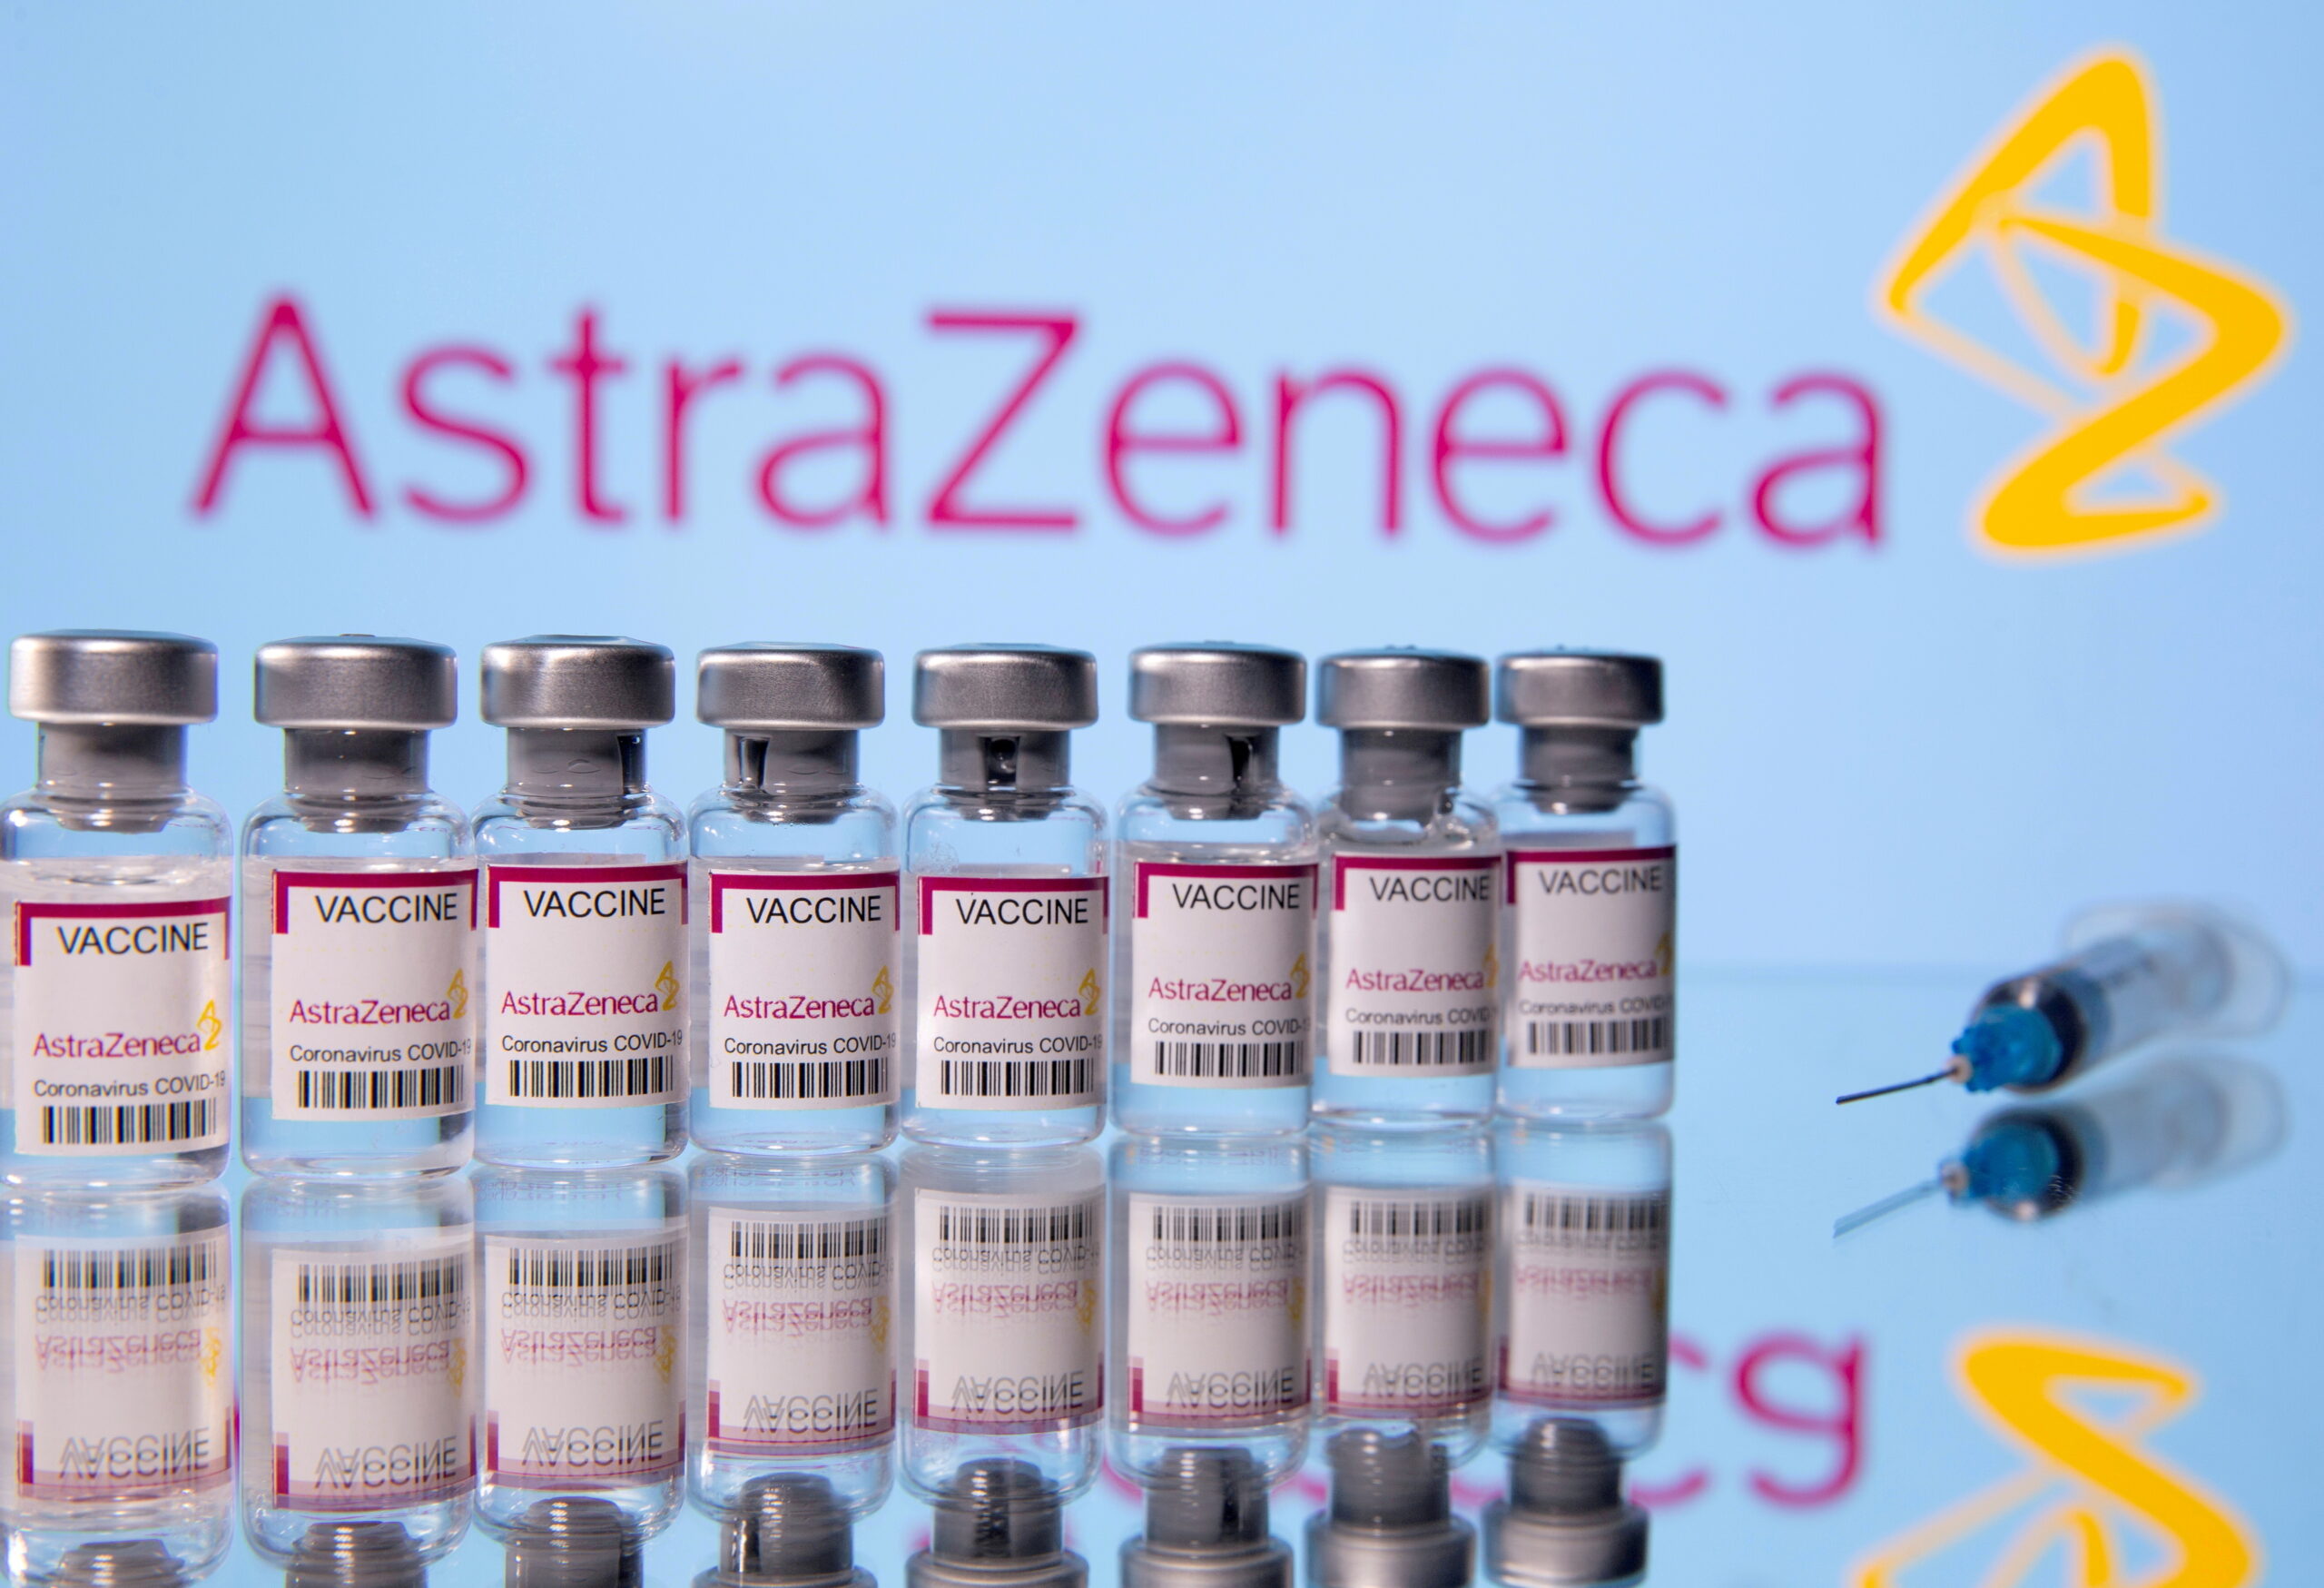 ยอดขายวัคซีนโควิด “แอสตร้าเซนเนก้า” ครึ่งปีแรกพุ่ง 3.95 หมื่นล้านบาท – ต่างประเทศ